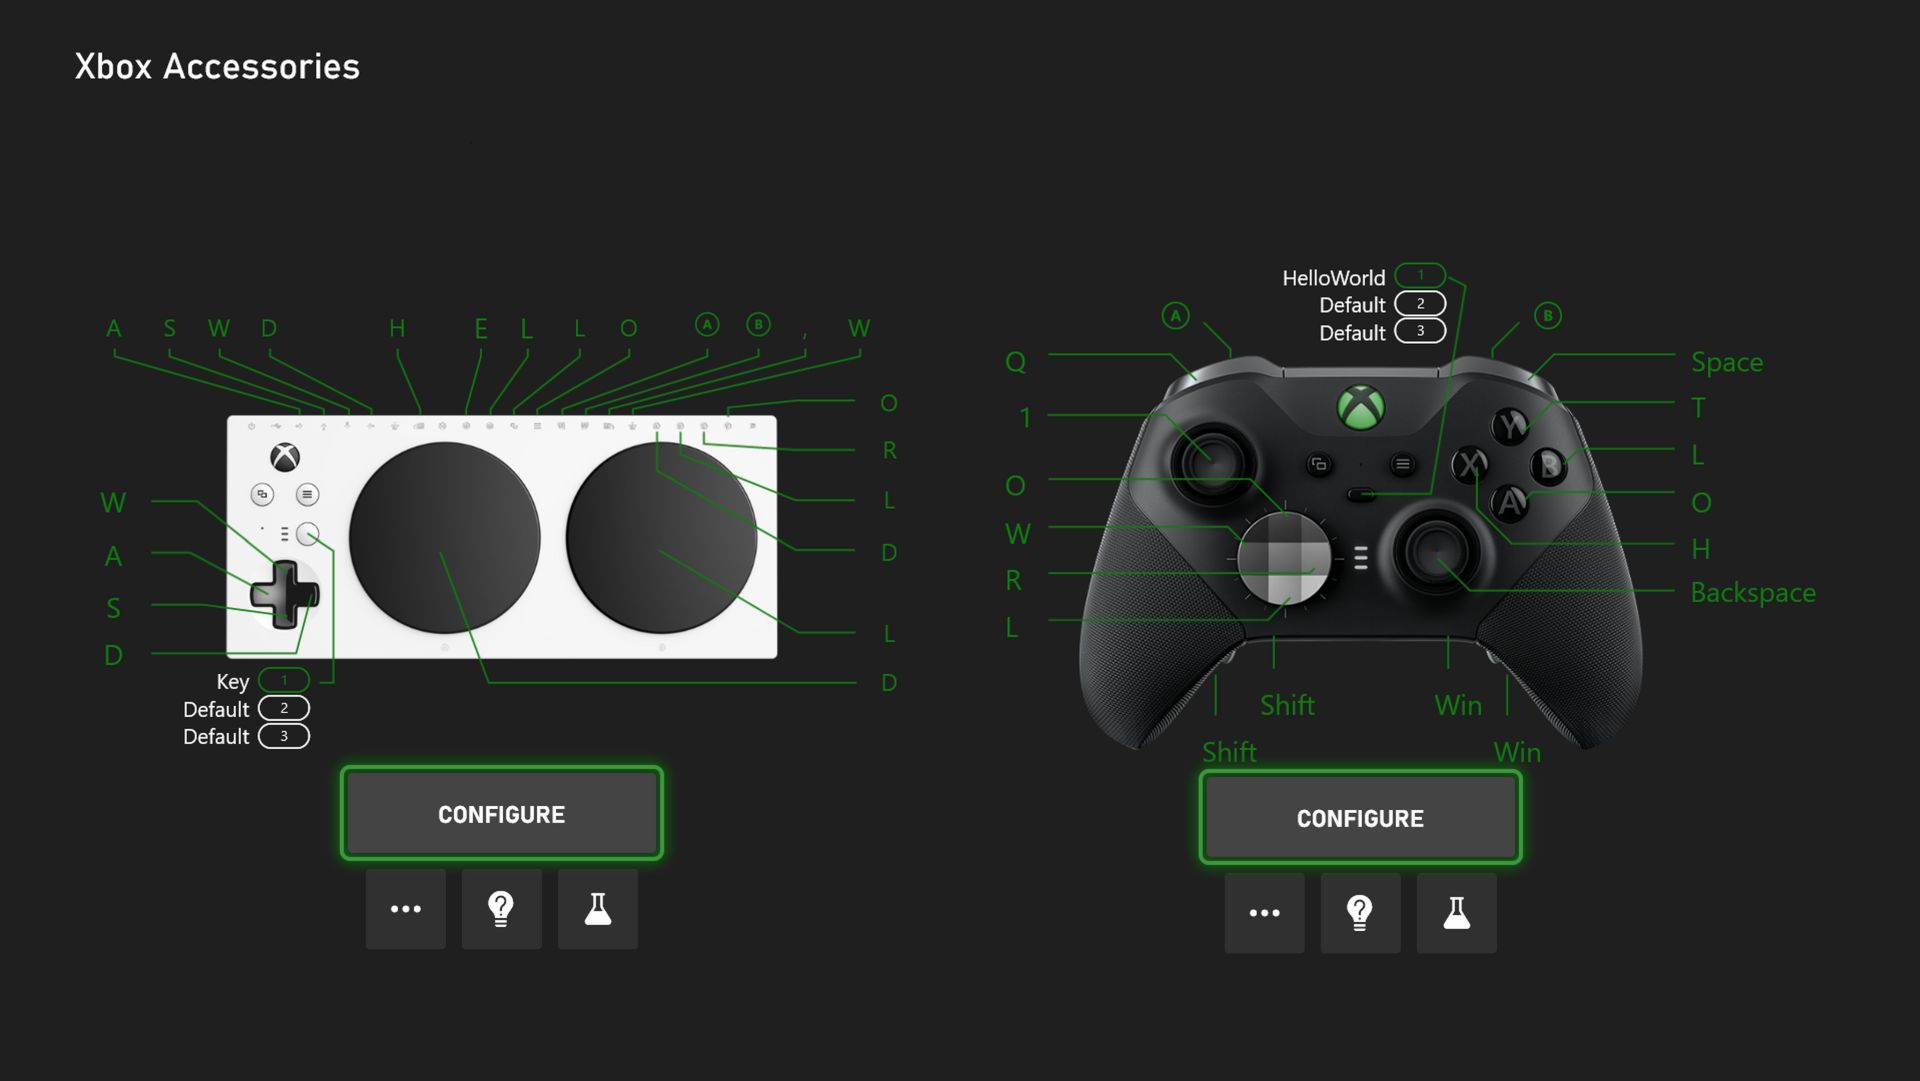 Comment obtenir un taux de rafraîchissement de 120 Hz sur la Xbox